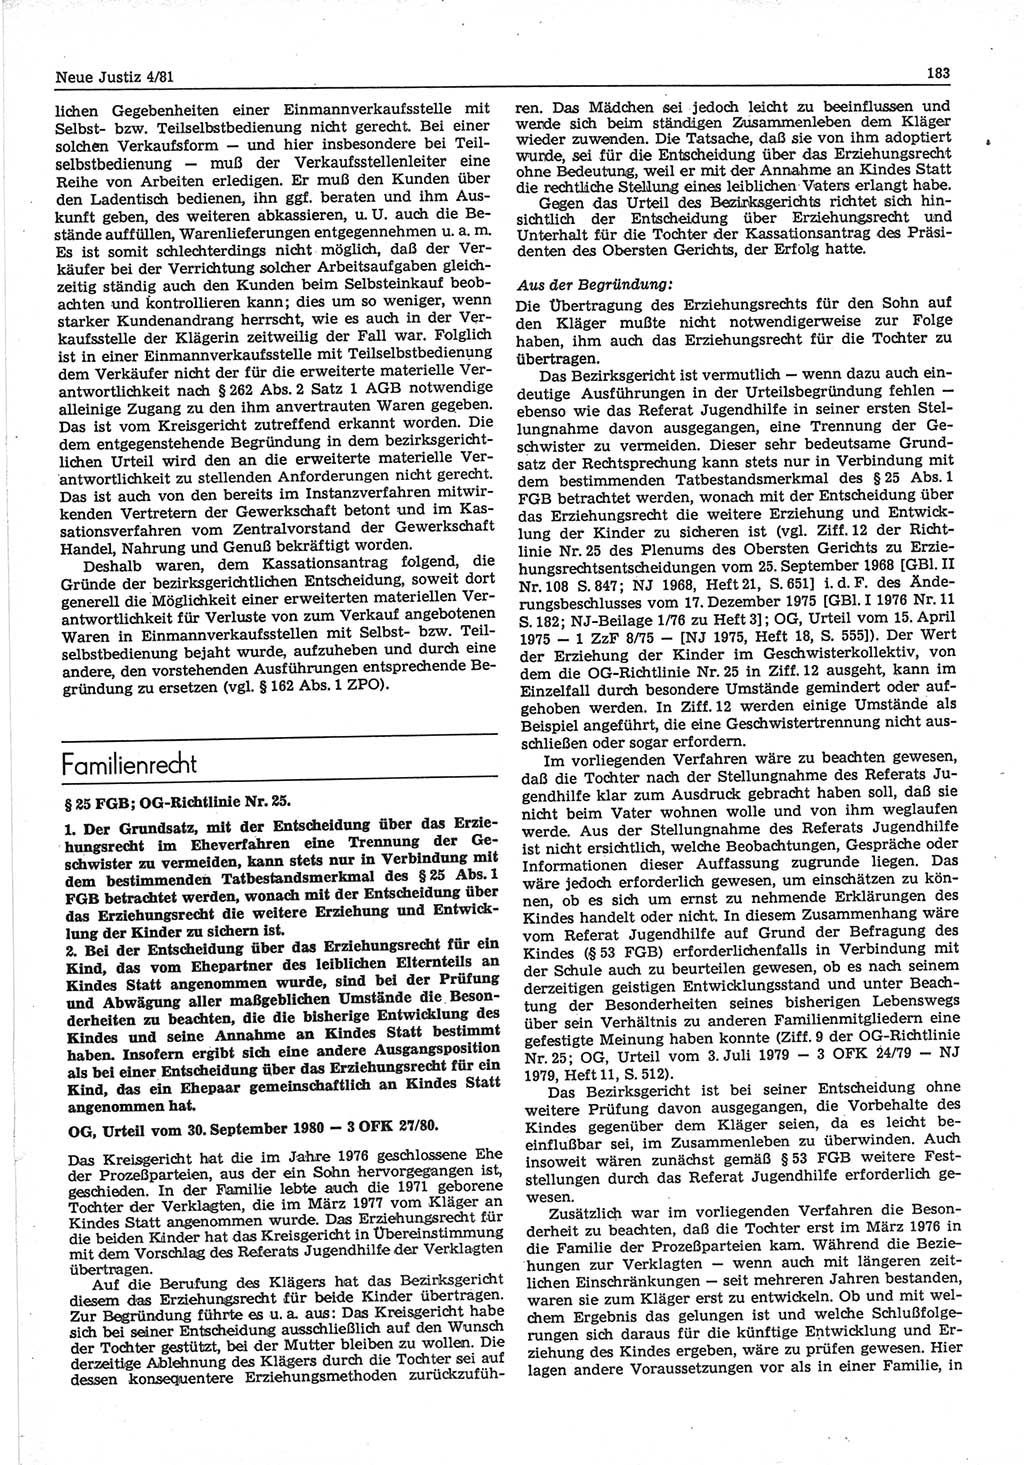 Neue Justiz (NJ), Zeitschrift für sozialistisches Recht und Gesetzlichkeit [Deutsche Demokratische Republik (DDR)], 35. Jahrgang 1981, Seite 183 (NJ DDR 1981, S. 183)